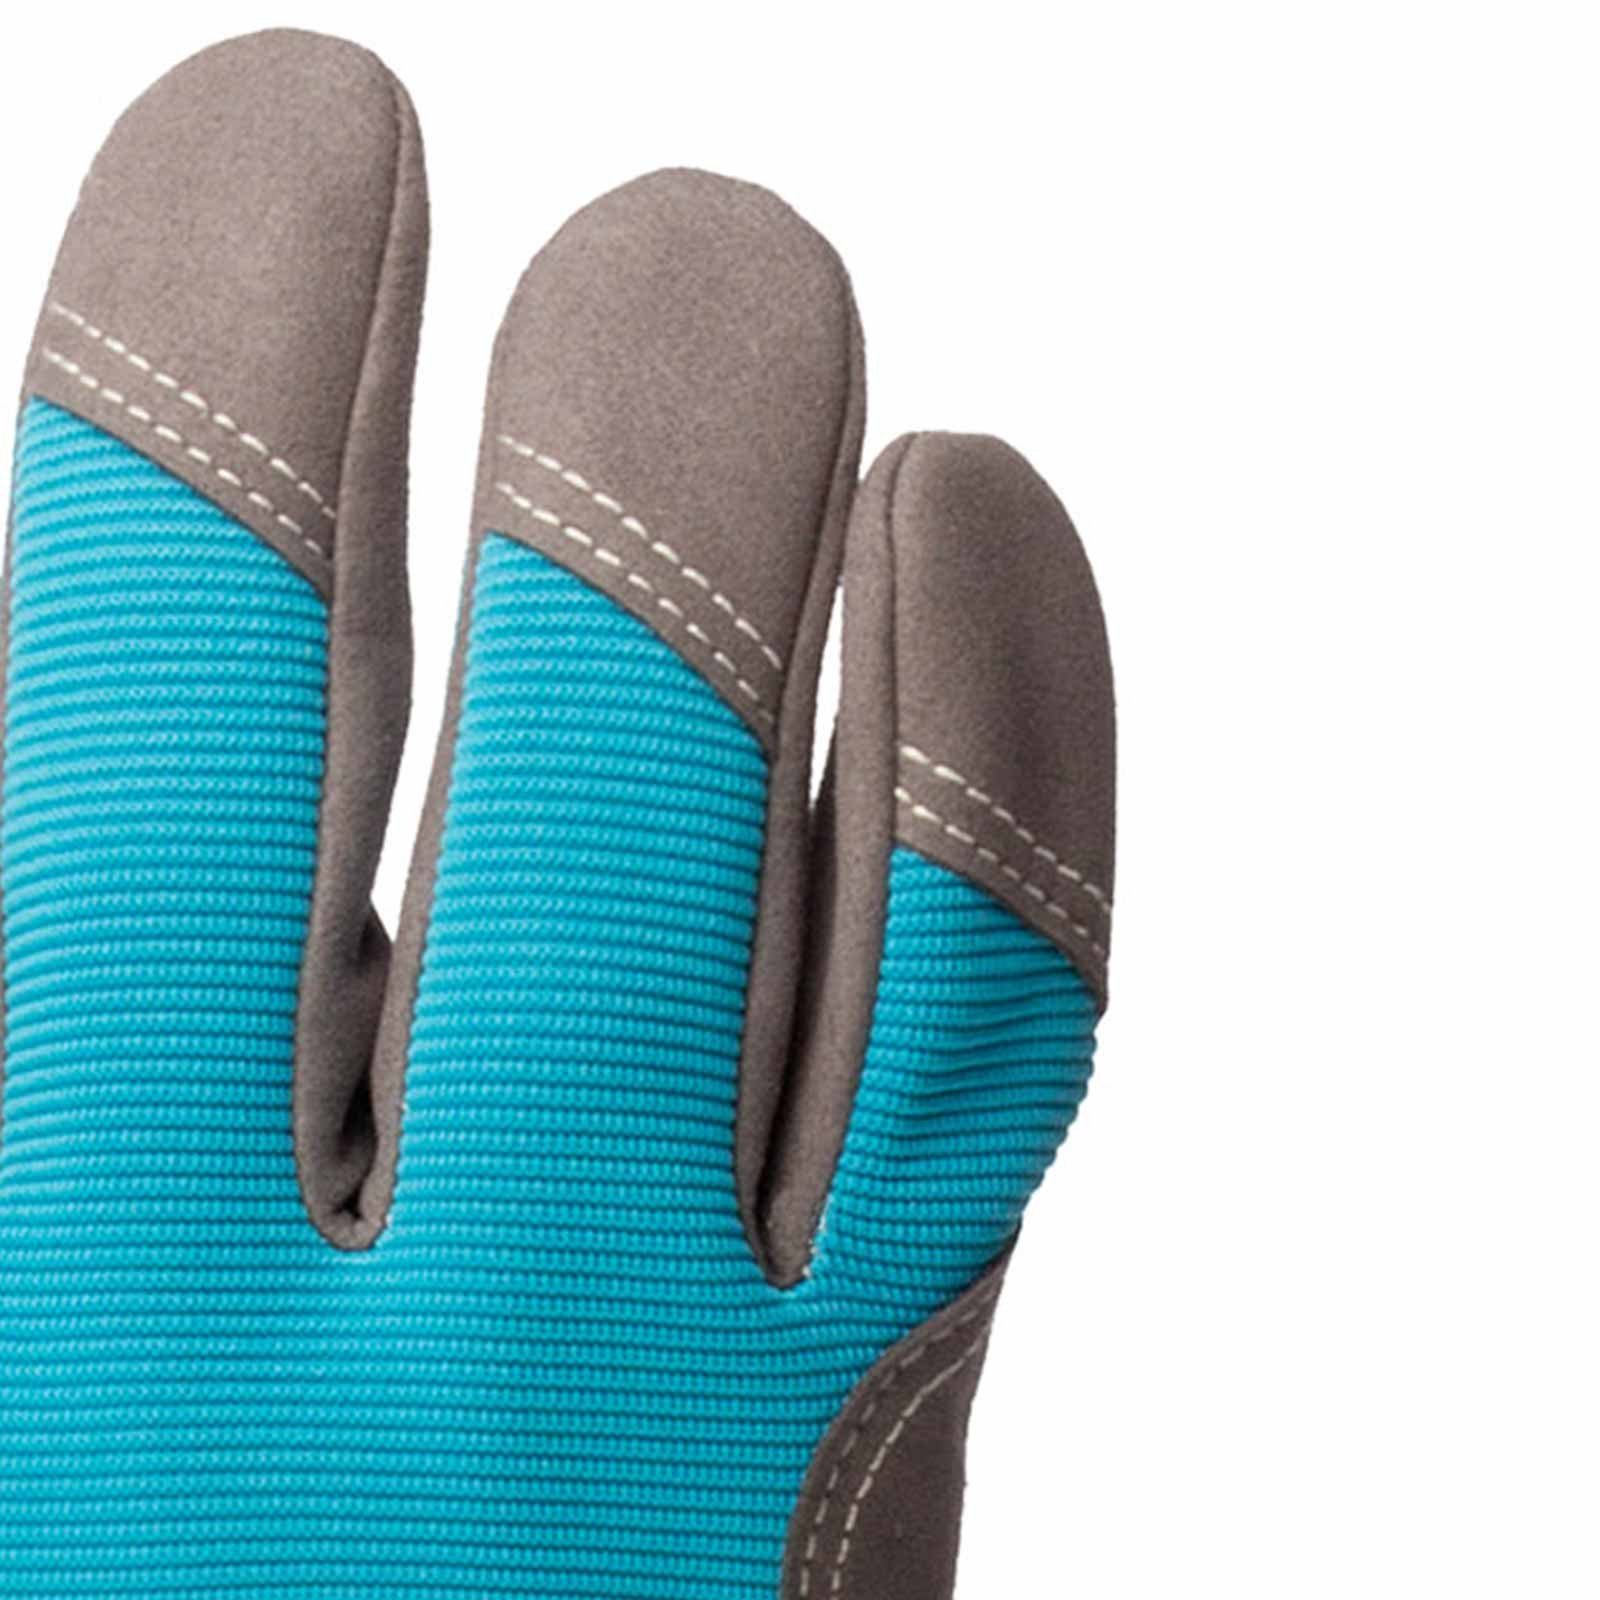 Keiler Forst Mechaniker-Handschuhe Schutzhandschuhe Fit Paar Handschuhe Keiler 12 blue (Spar-Set) - Gartenhandschuh